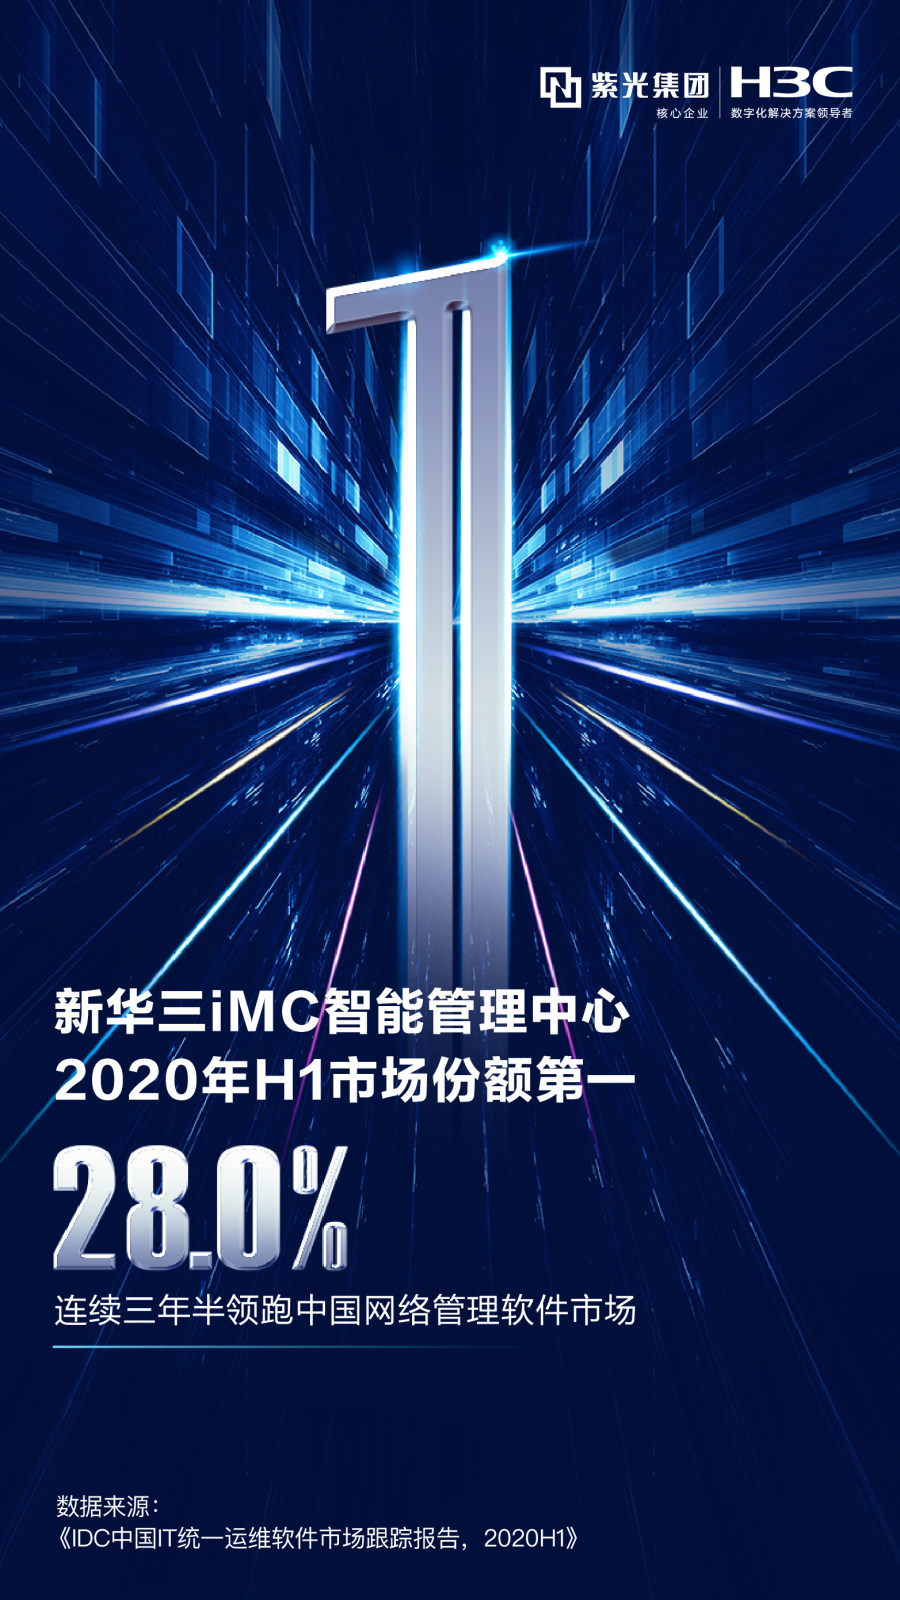 再获第一 紫光股份旗下新华三集团iMC持续领跑中国网络管理软件市场